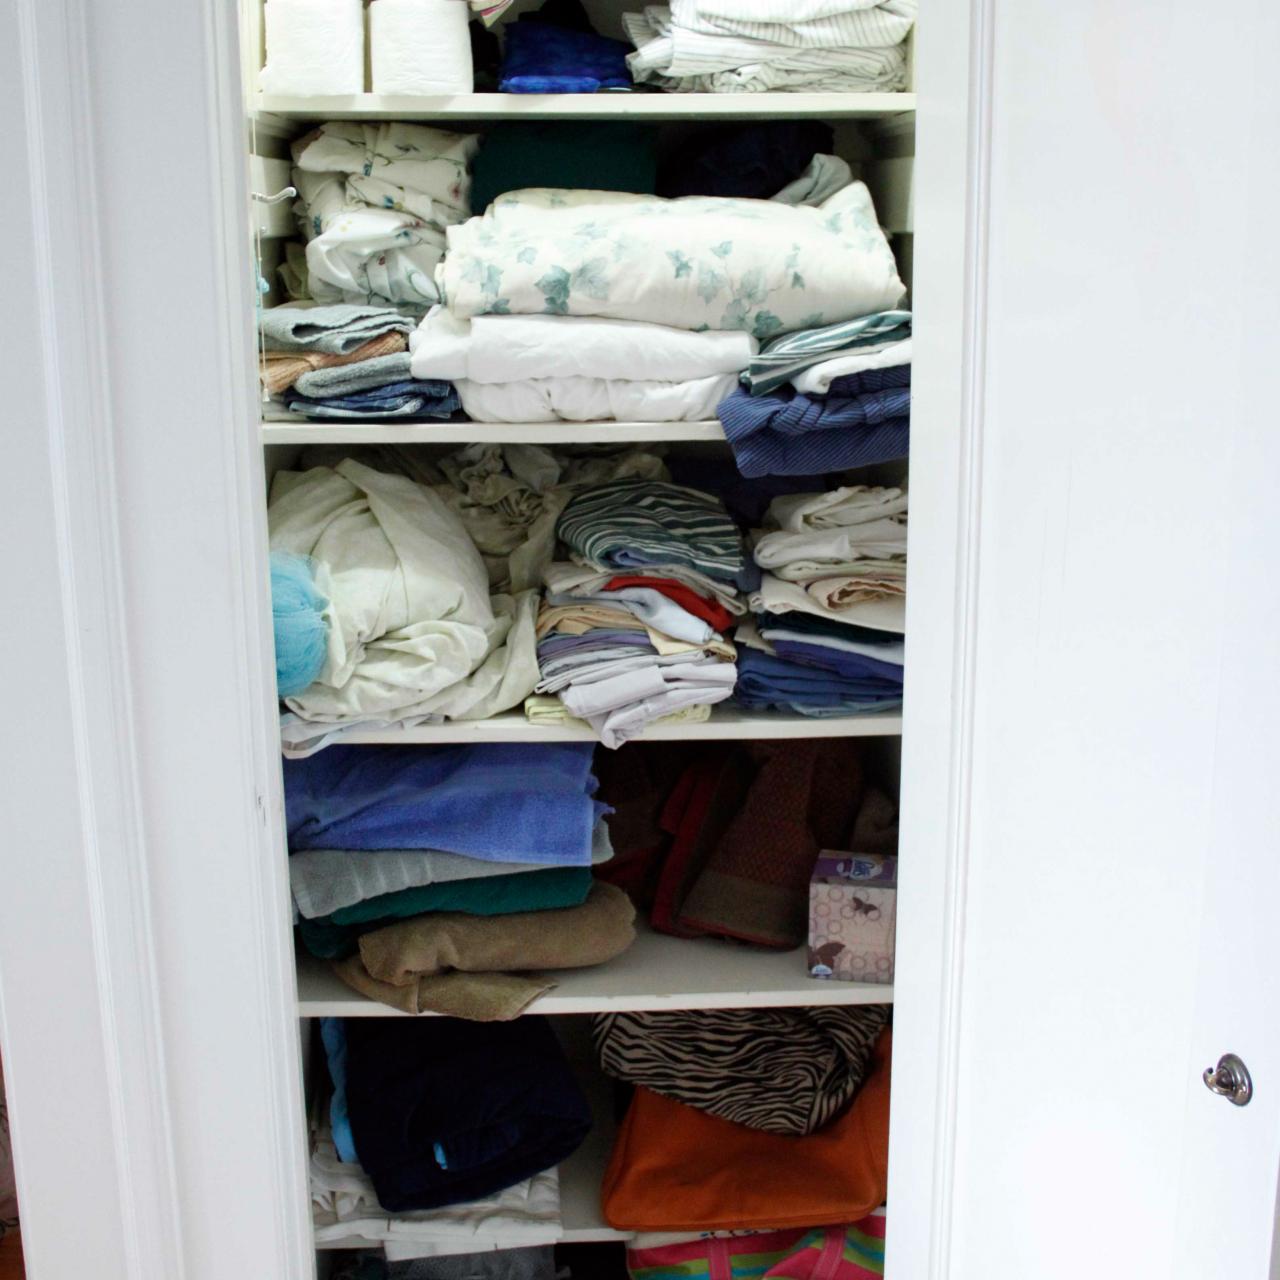 Case Study: An Efficient Linen Closet